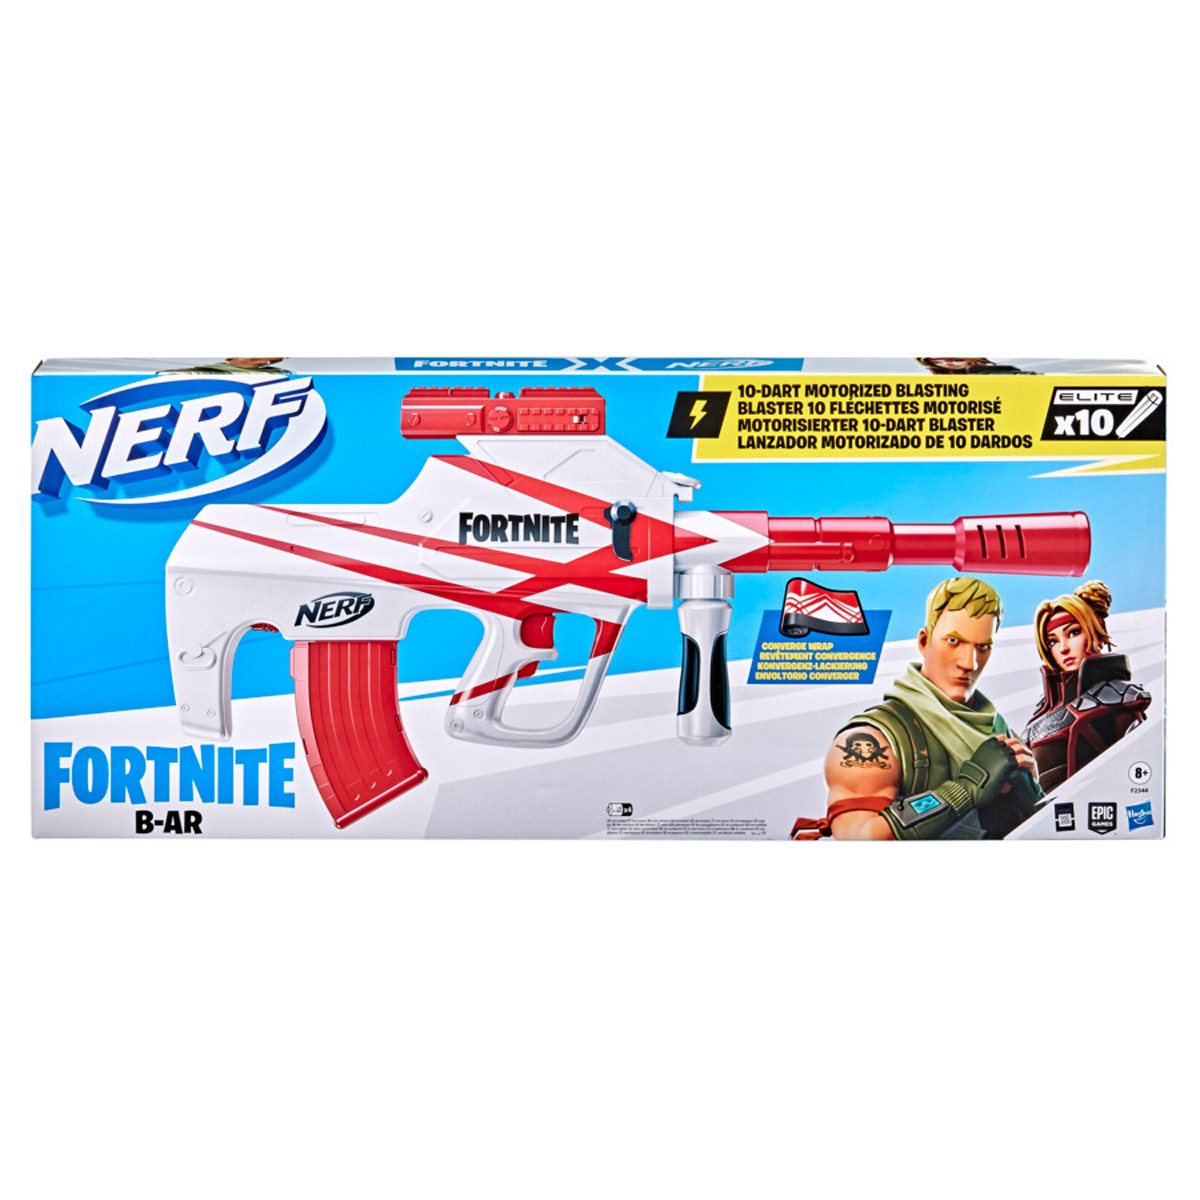 Fortnite Nerf Dart Blaster